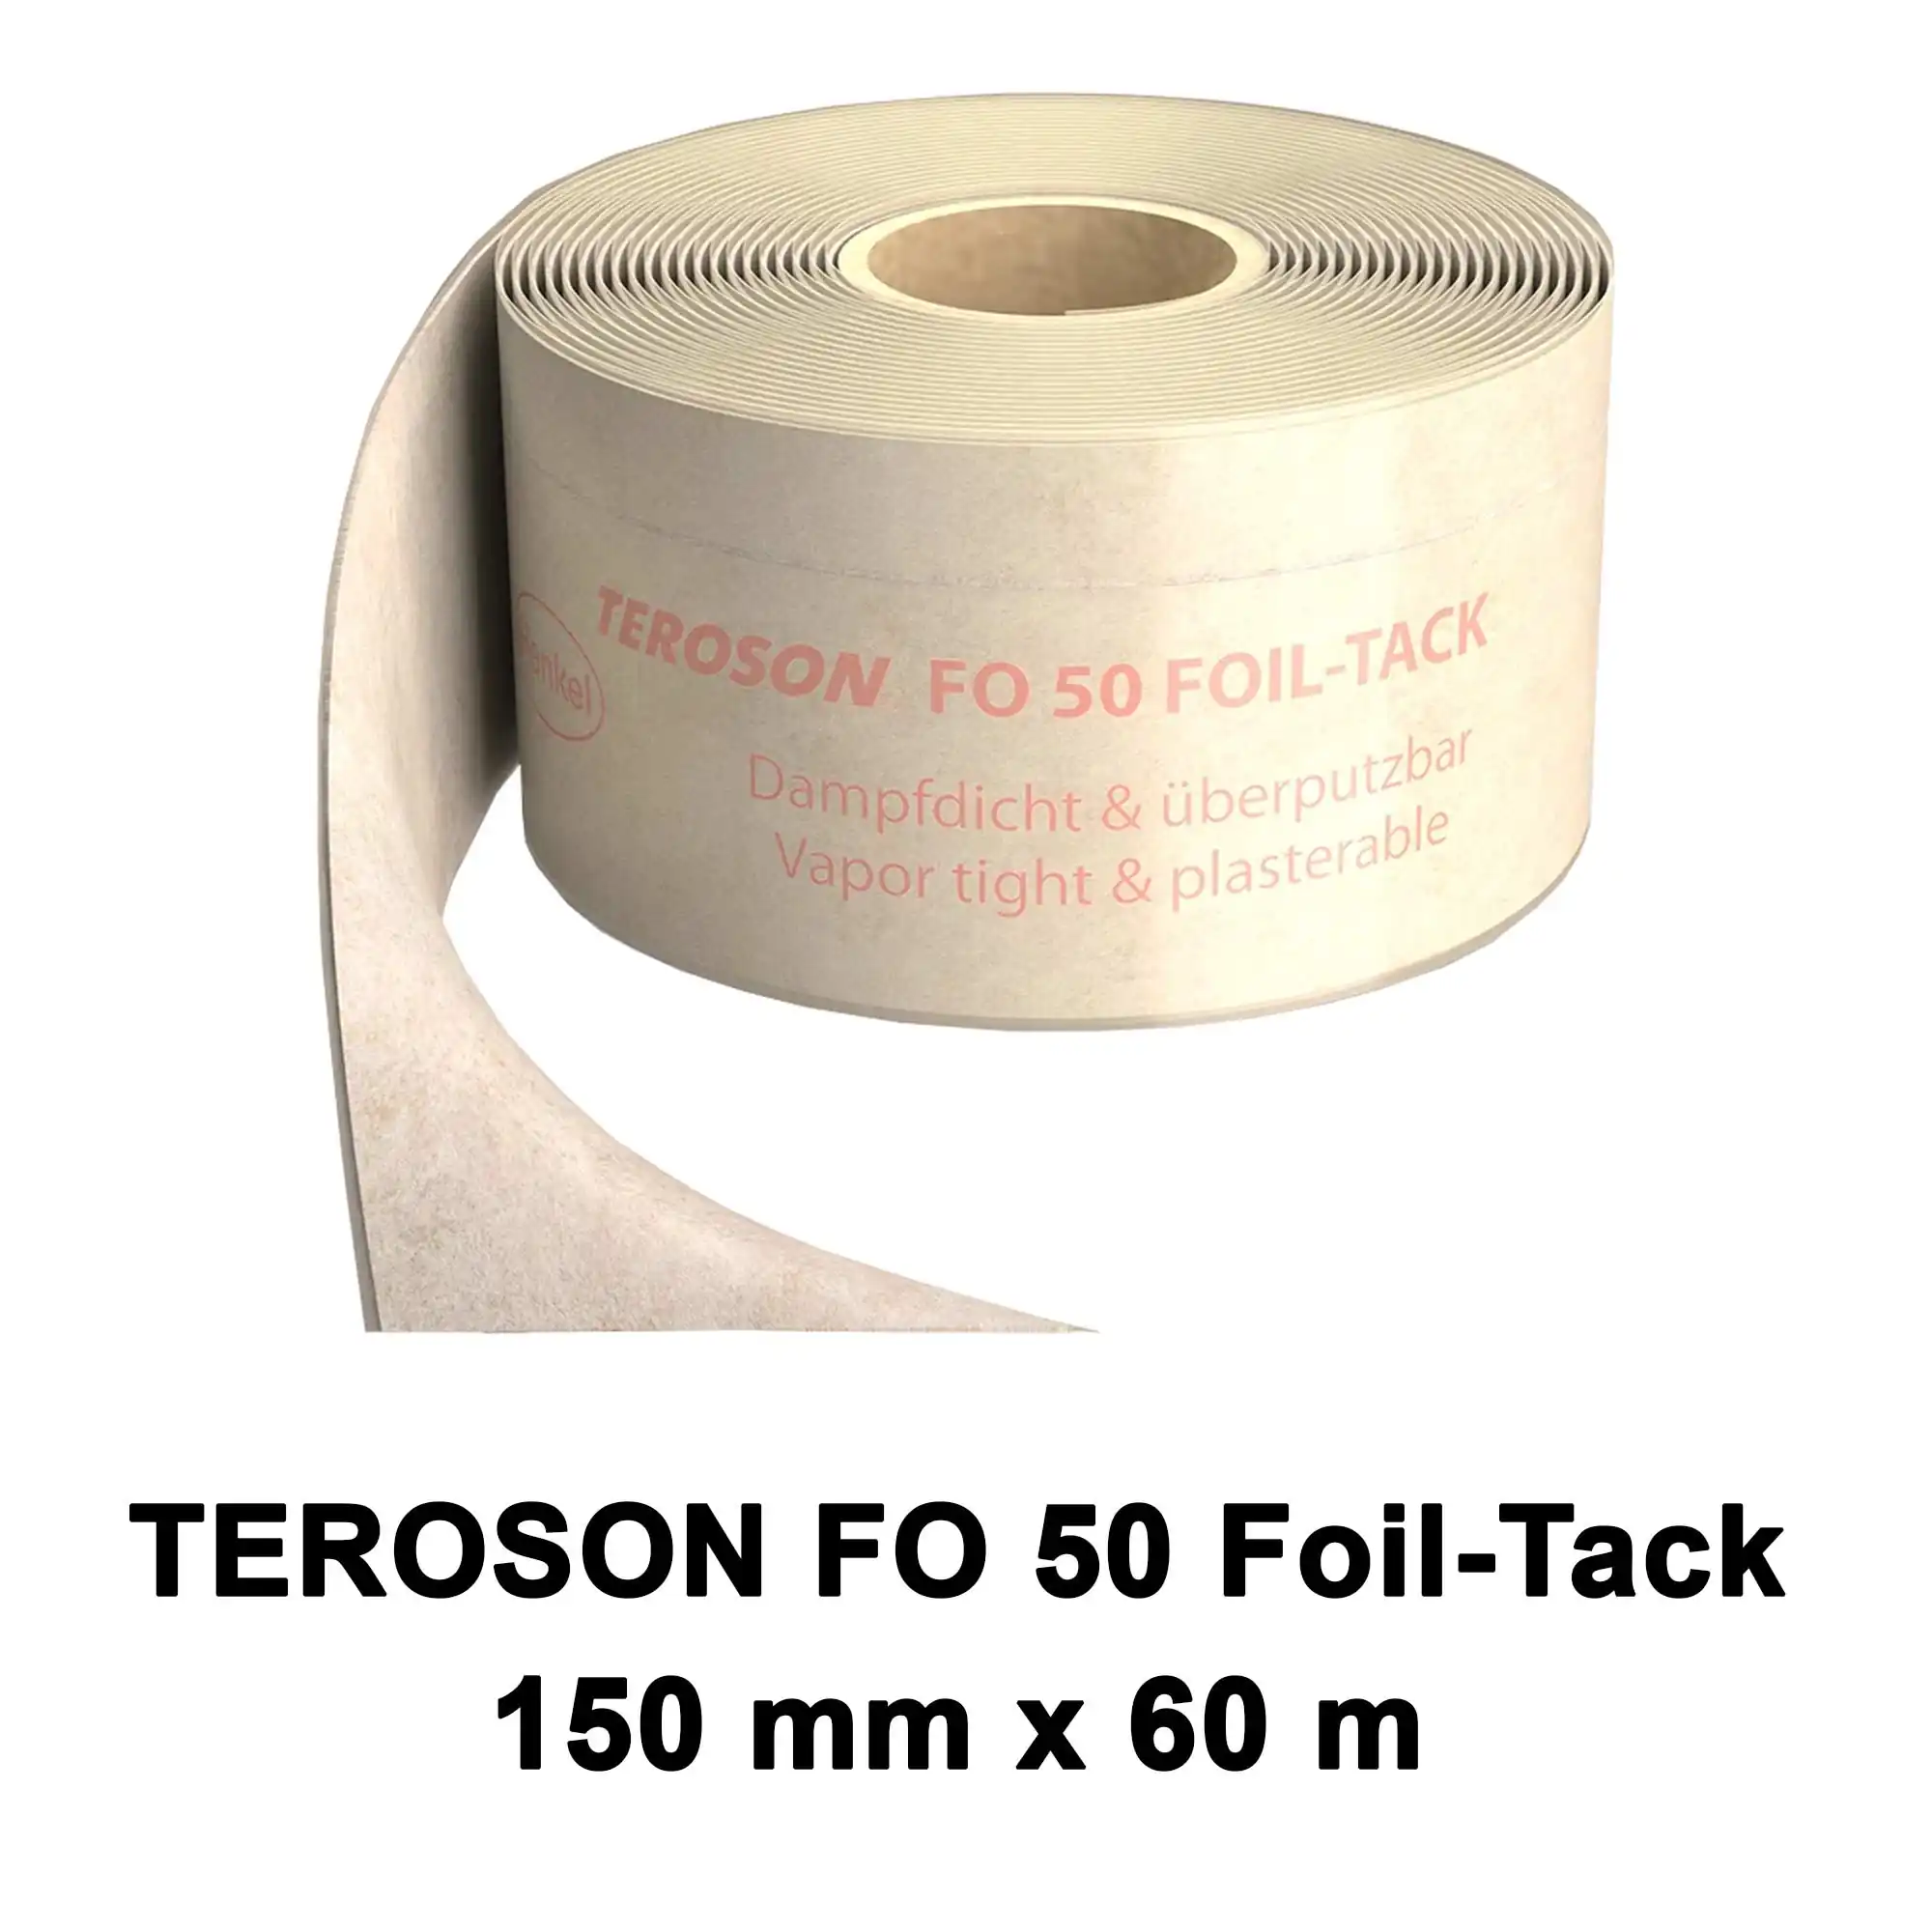 Dichtfolie TEROSON FO 50 FOIL-TACK 150mm x 60m